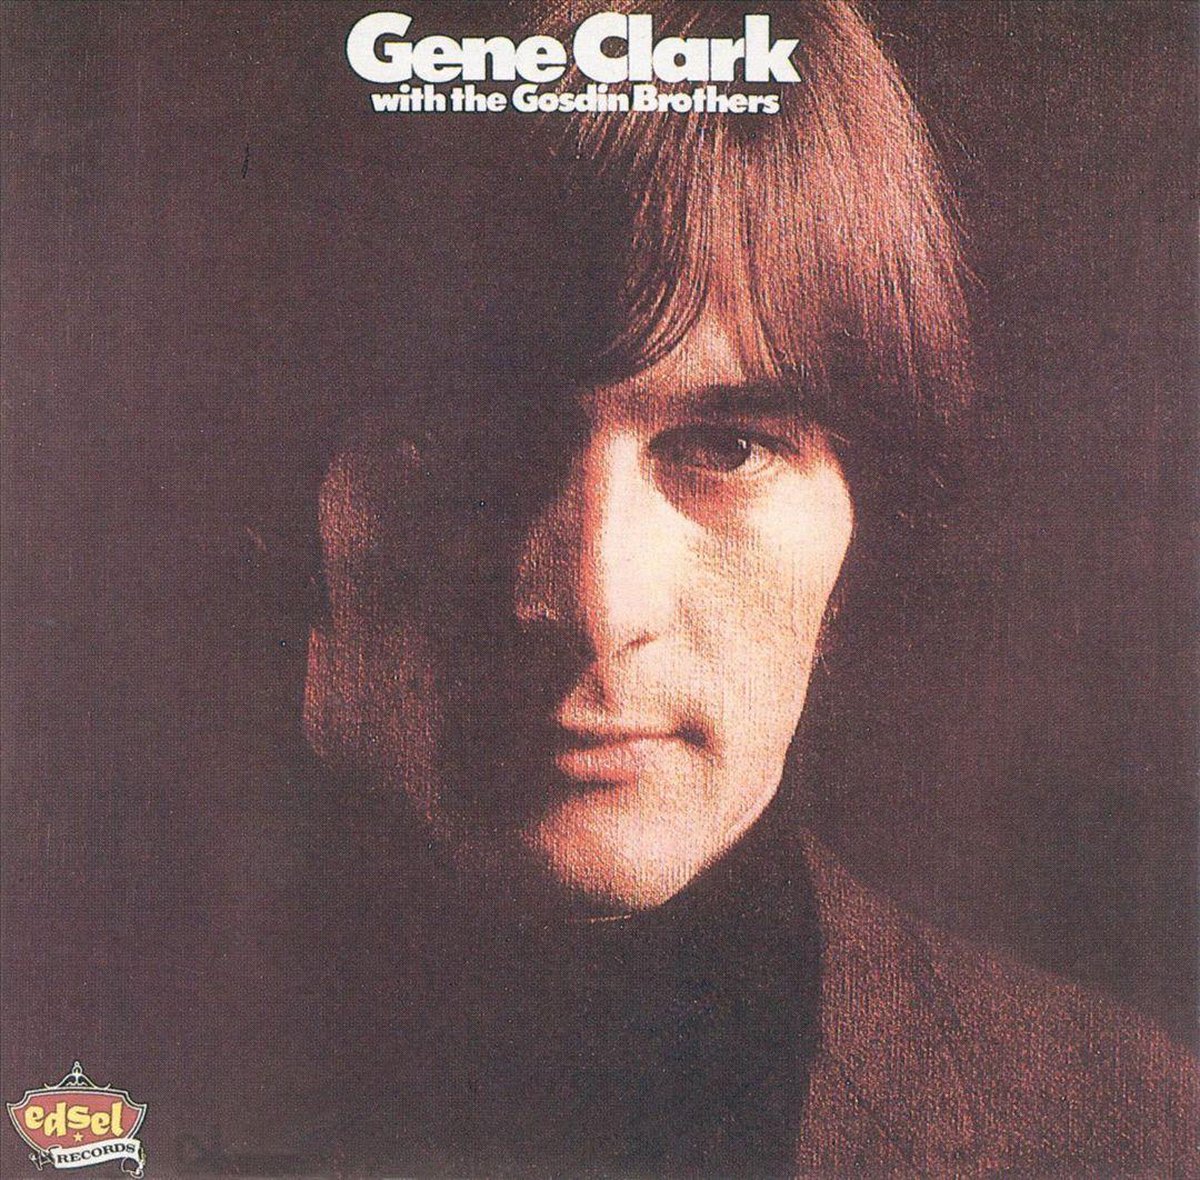 Gene Clark with the Gosdin Brothers - Gene Clark